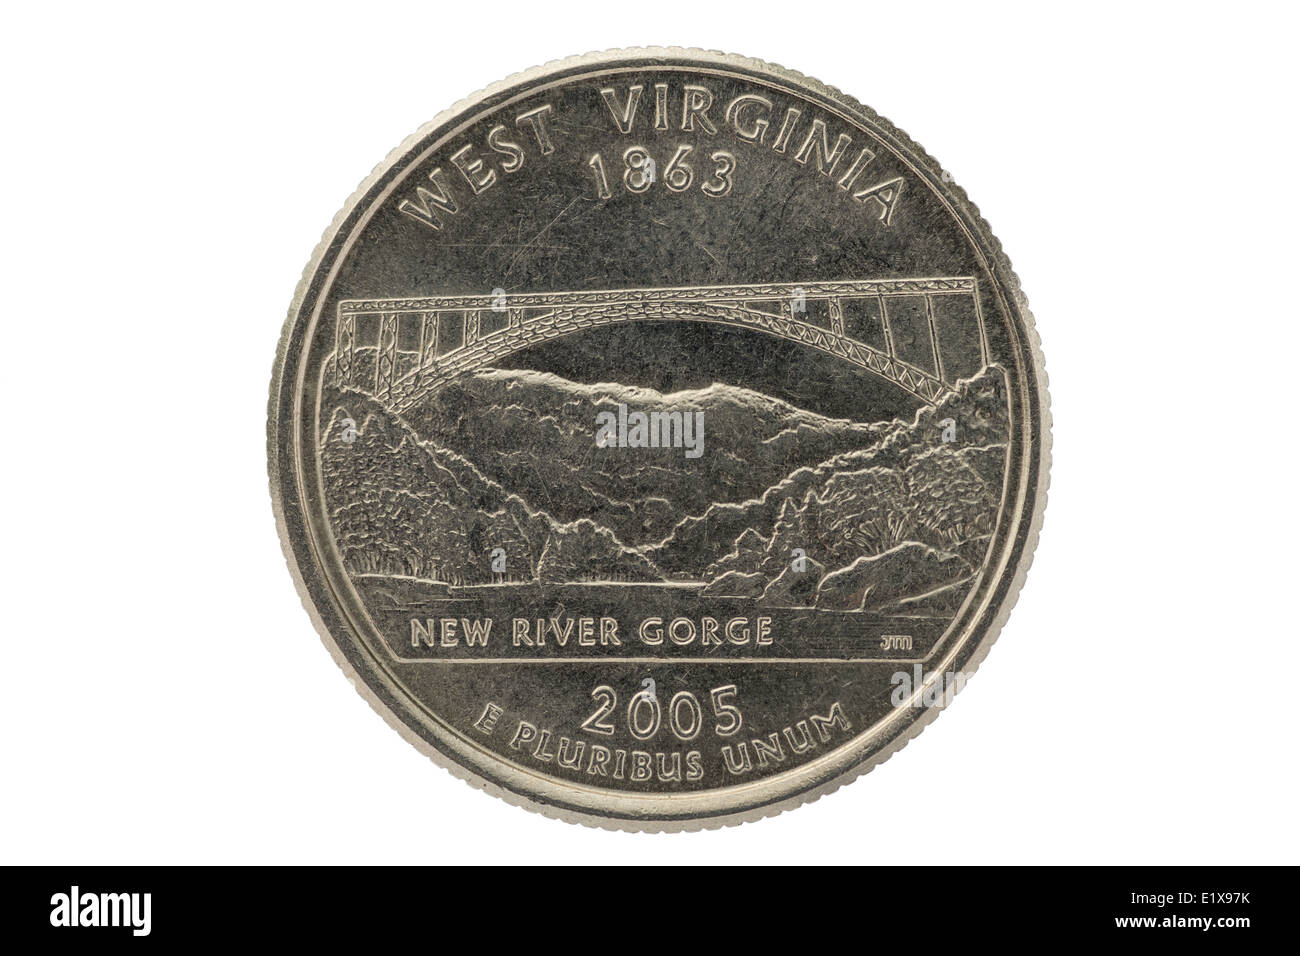 West Virginia stato trimestre commemorative coin isolati su sfondo bianco Foto Stock